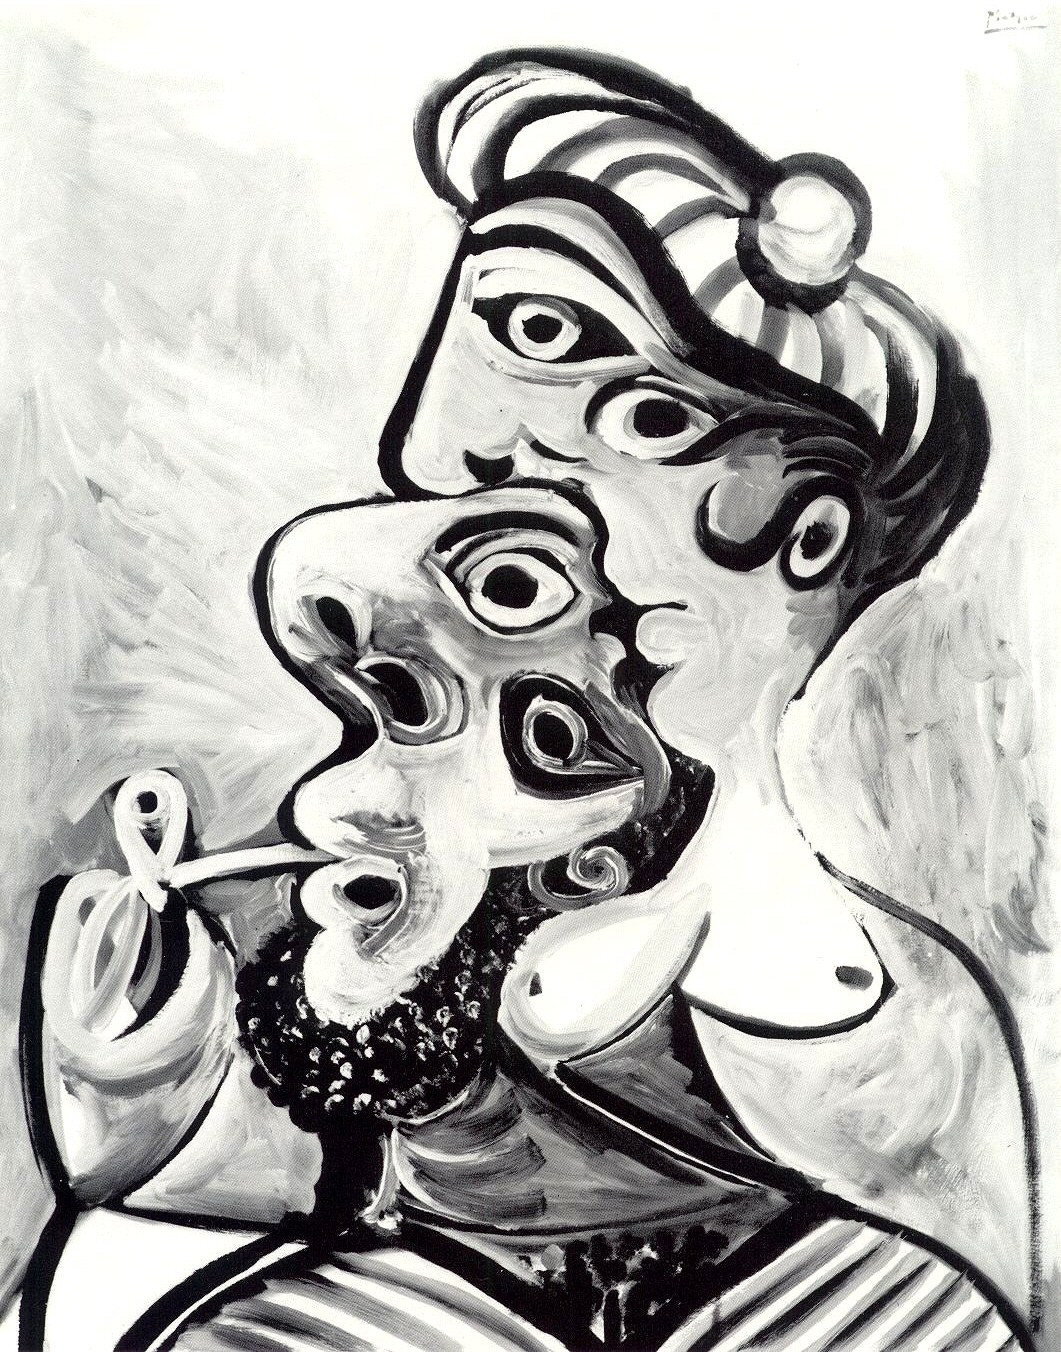 Пабло Пикассо. "Бюсты мужчины и женщины". 1969.